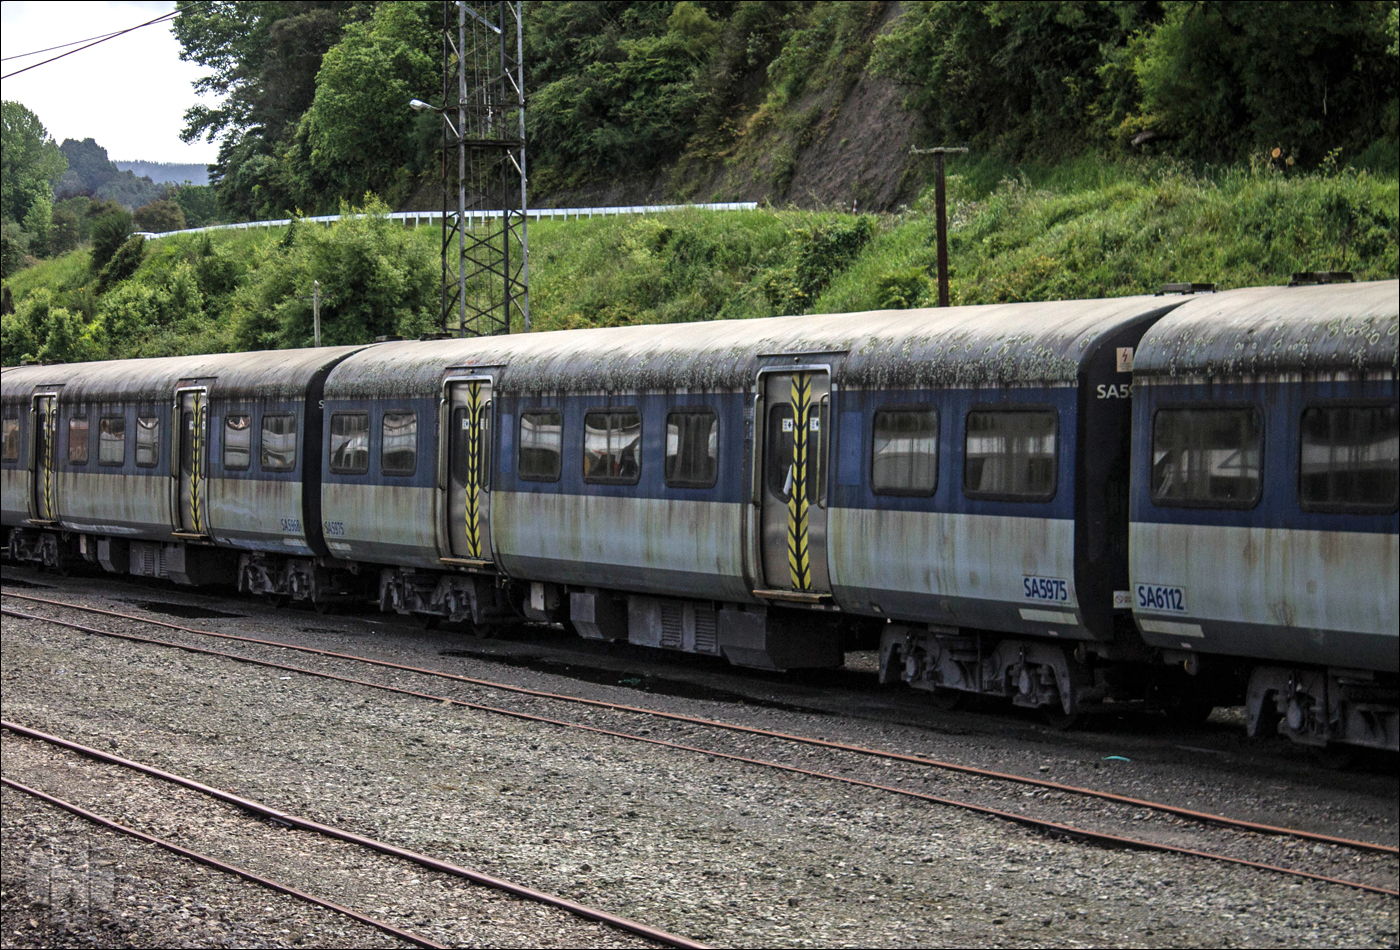 British Rail Mk2 típusú, SA (Suburban Auckland) sorozatú személykocsik Taumarunui állomásán.